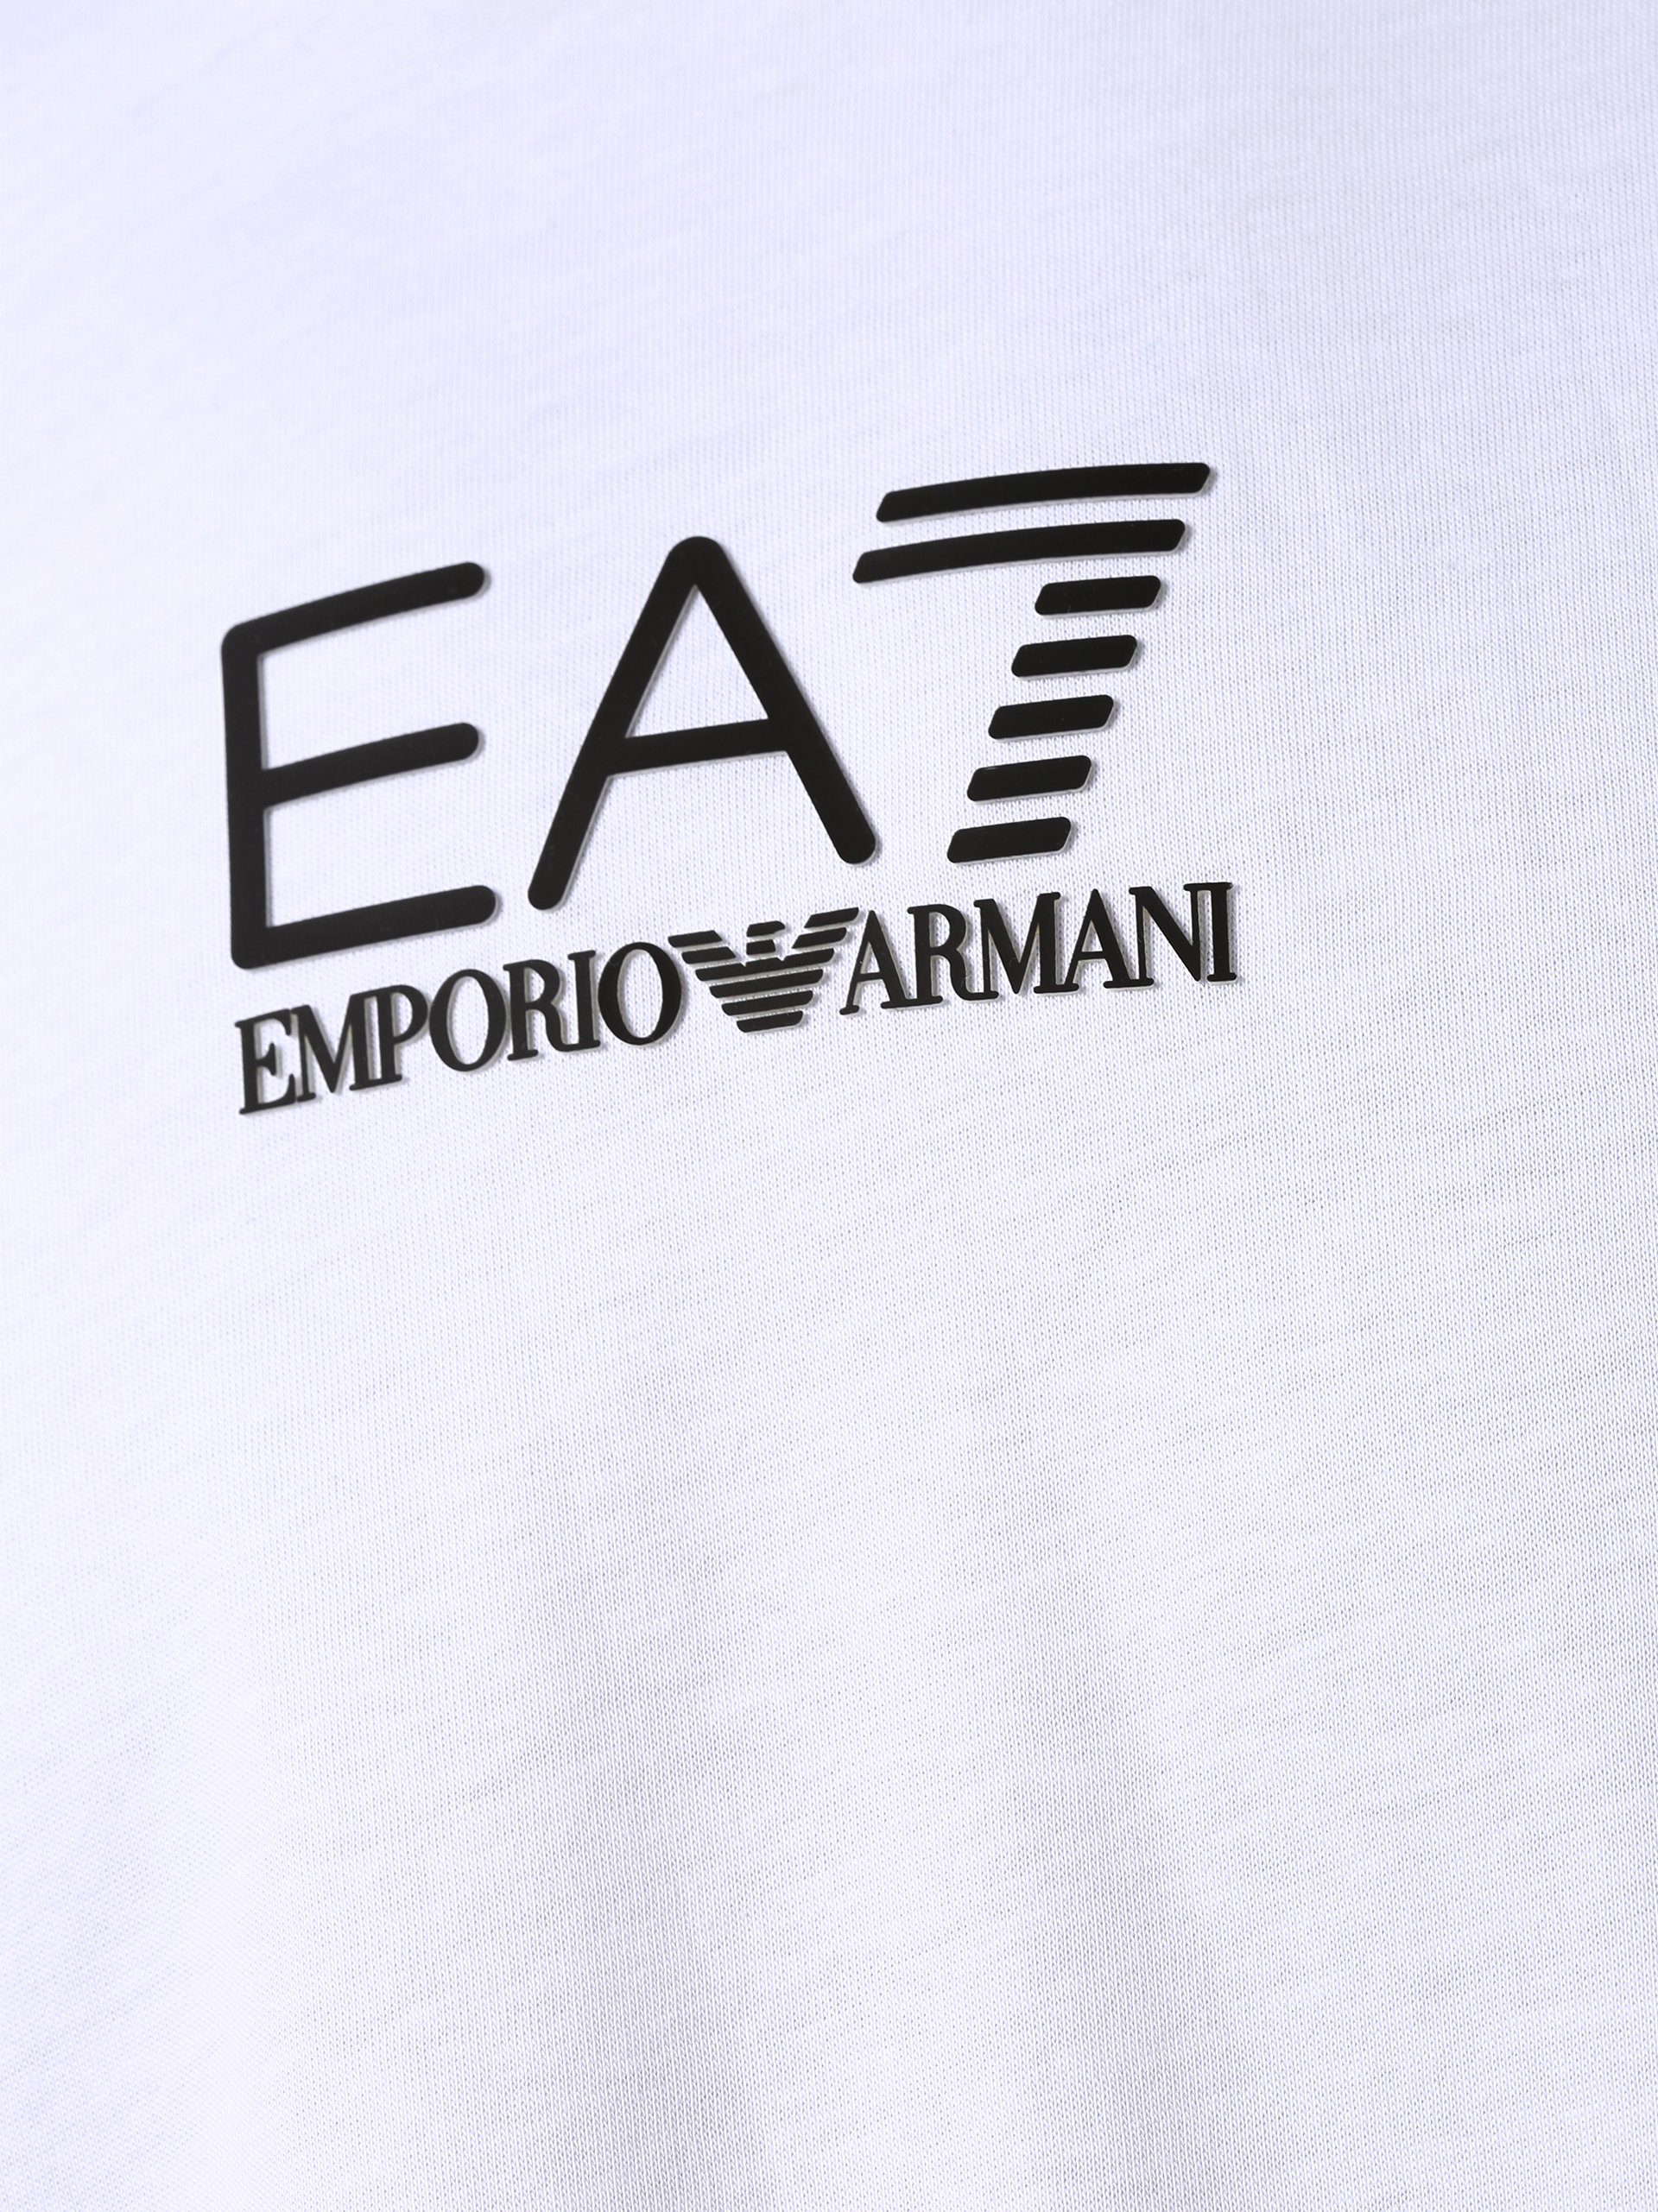 Emporio T-Shirt schwarz weiß Armani